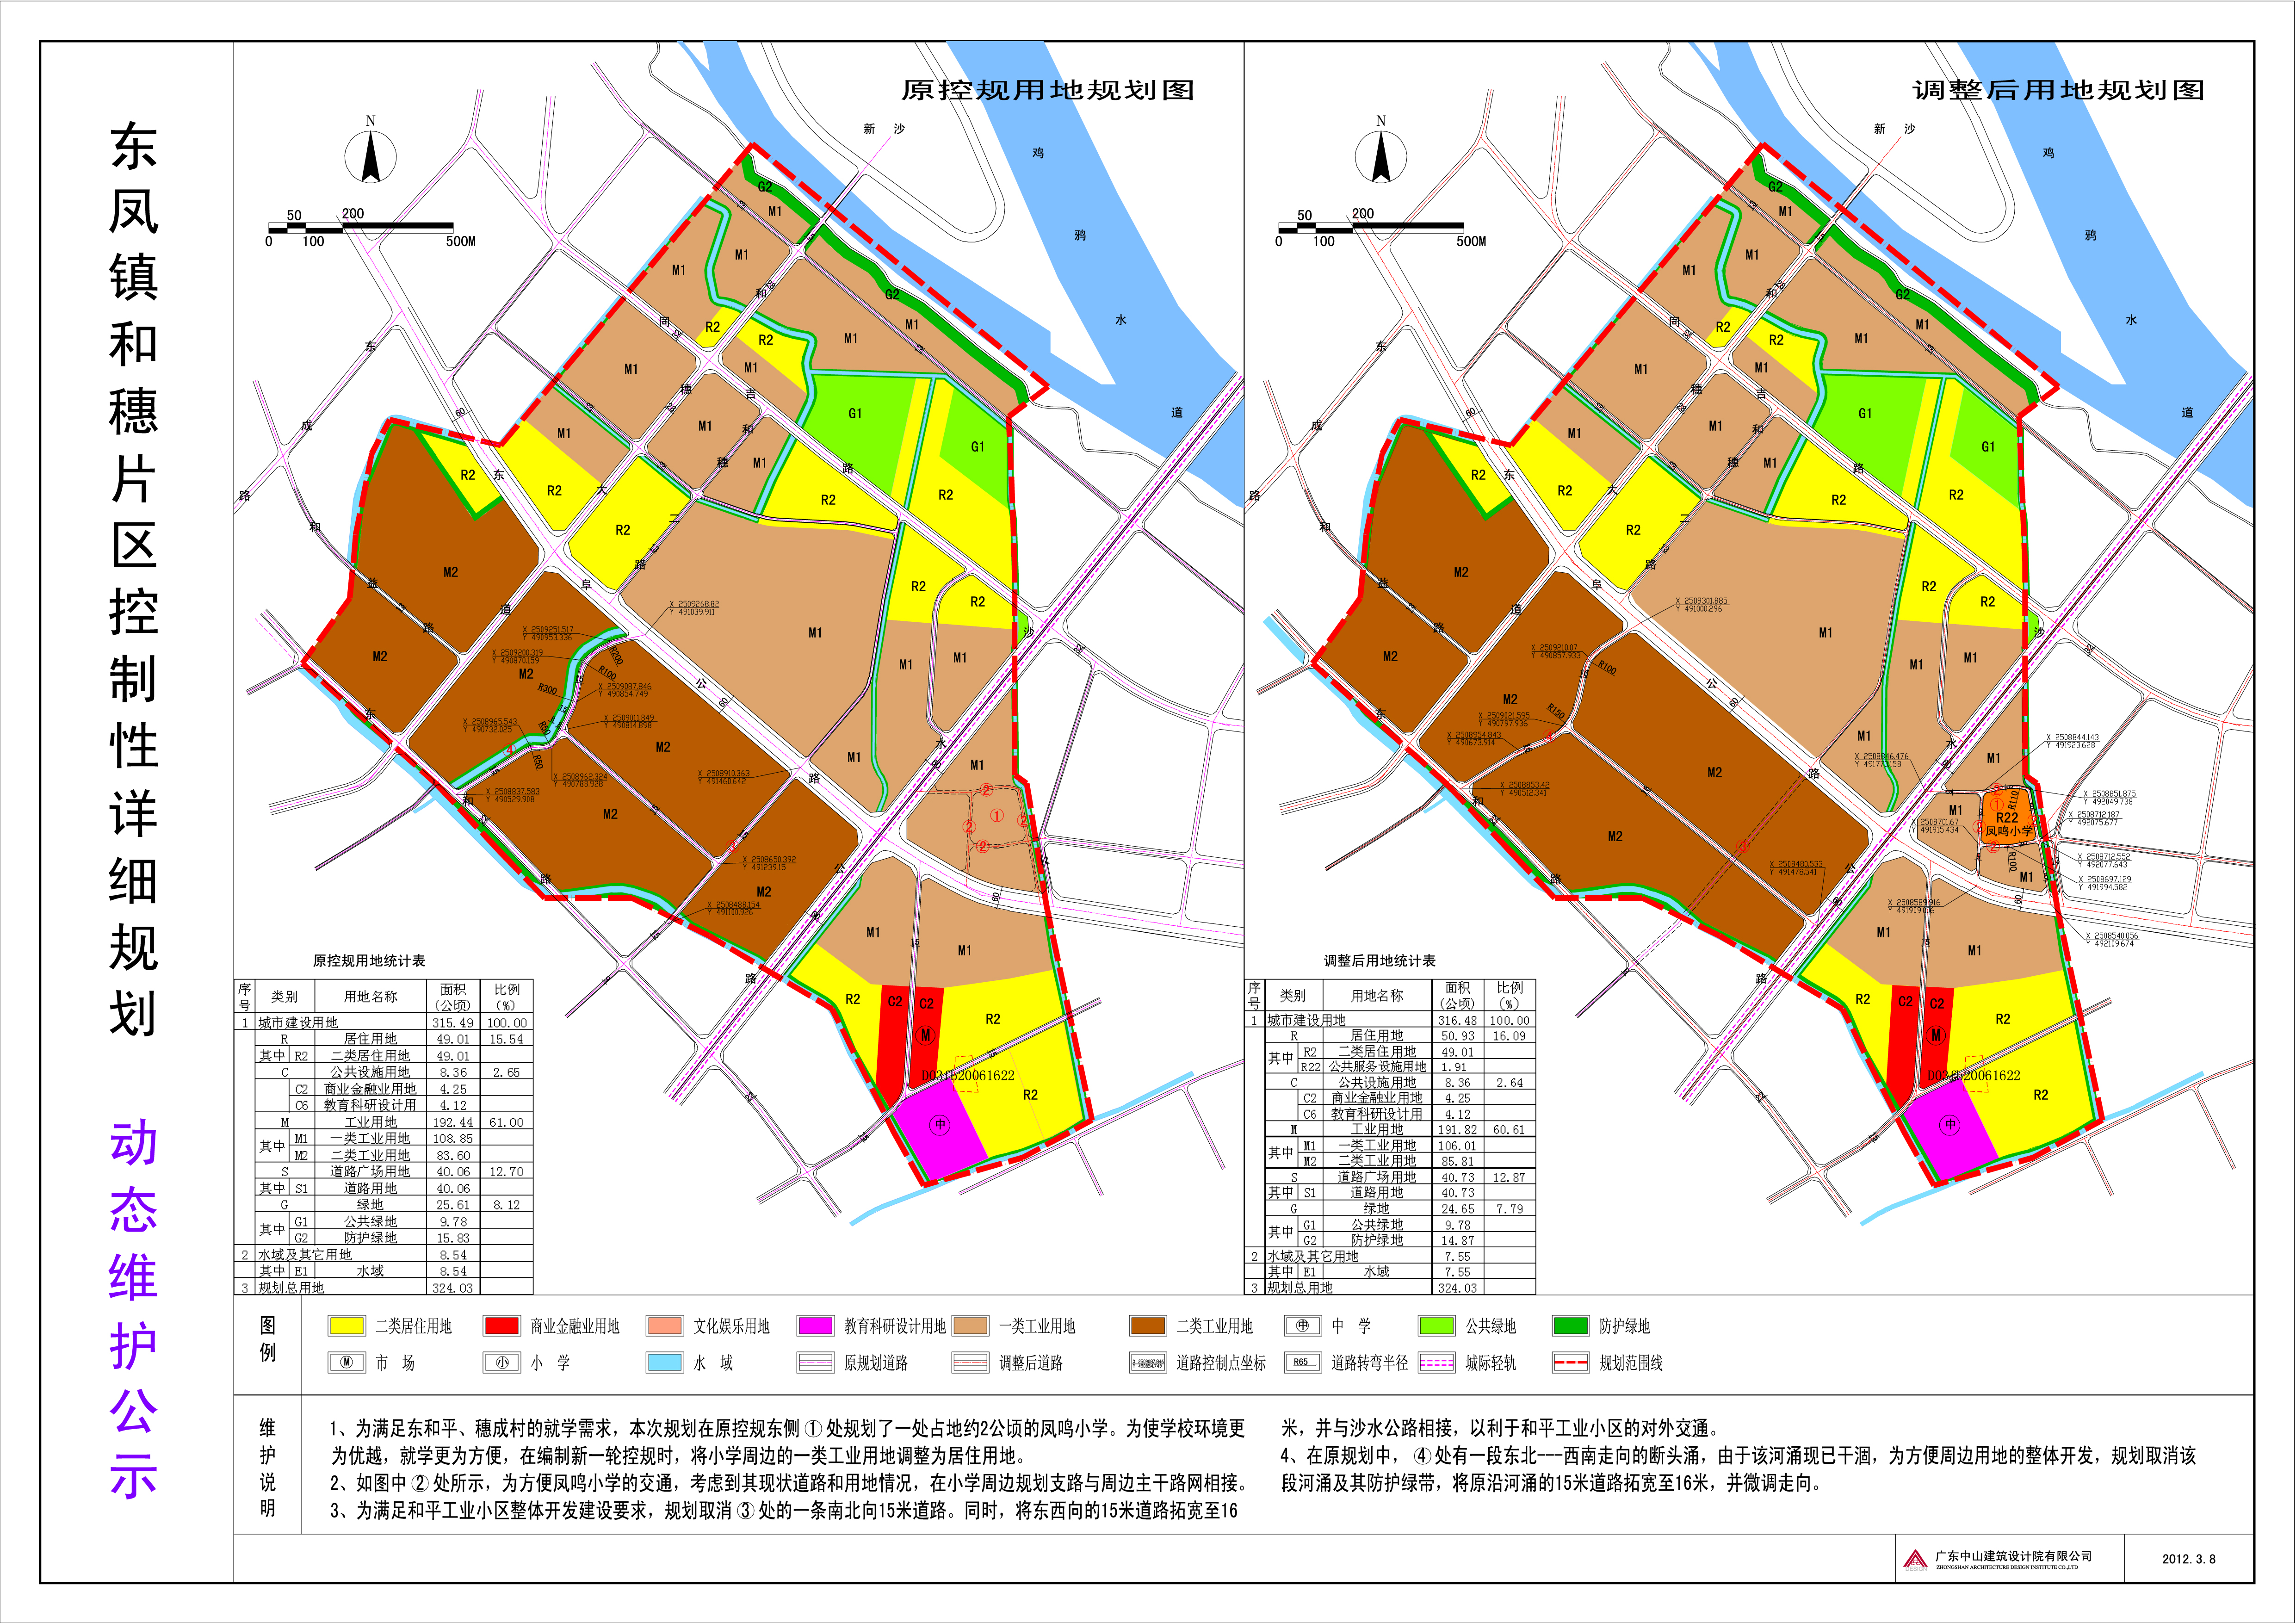 关于《中山市东凤镇和穗片区控制性详细规划》动态维护的公示